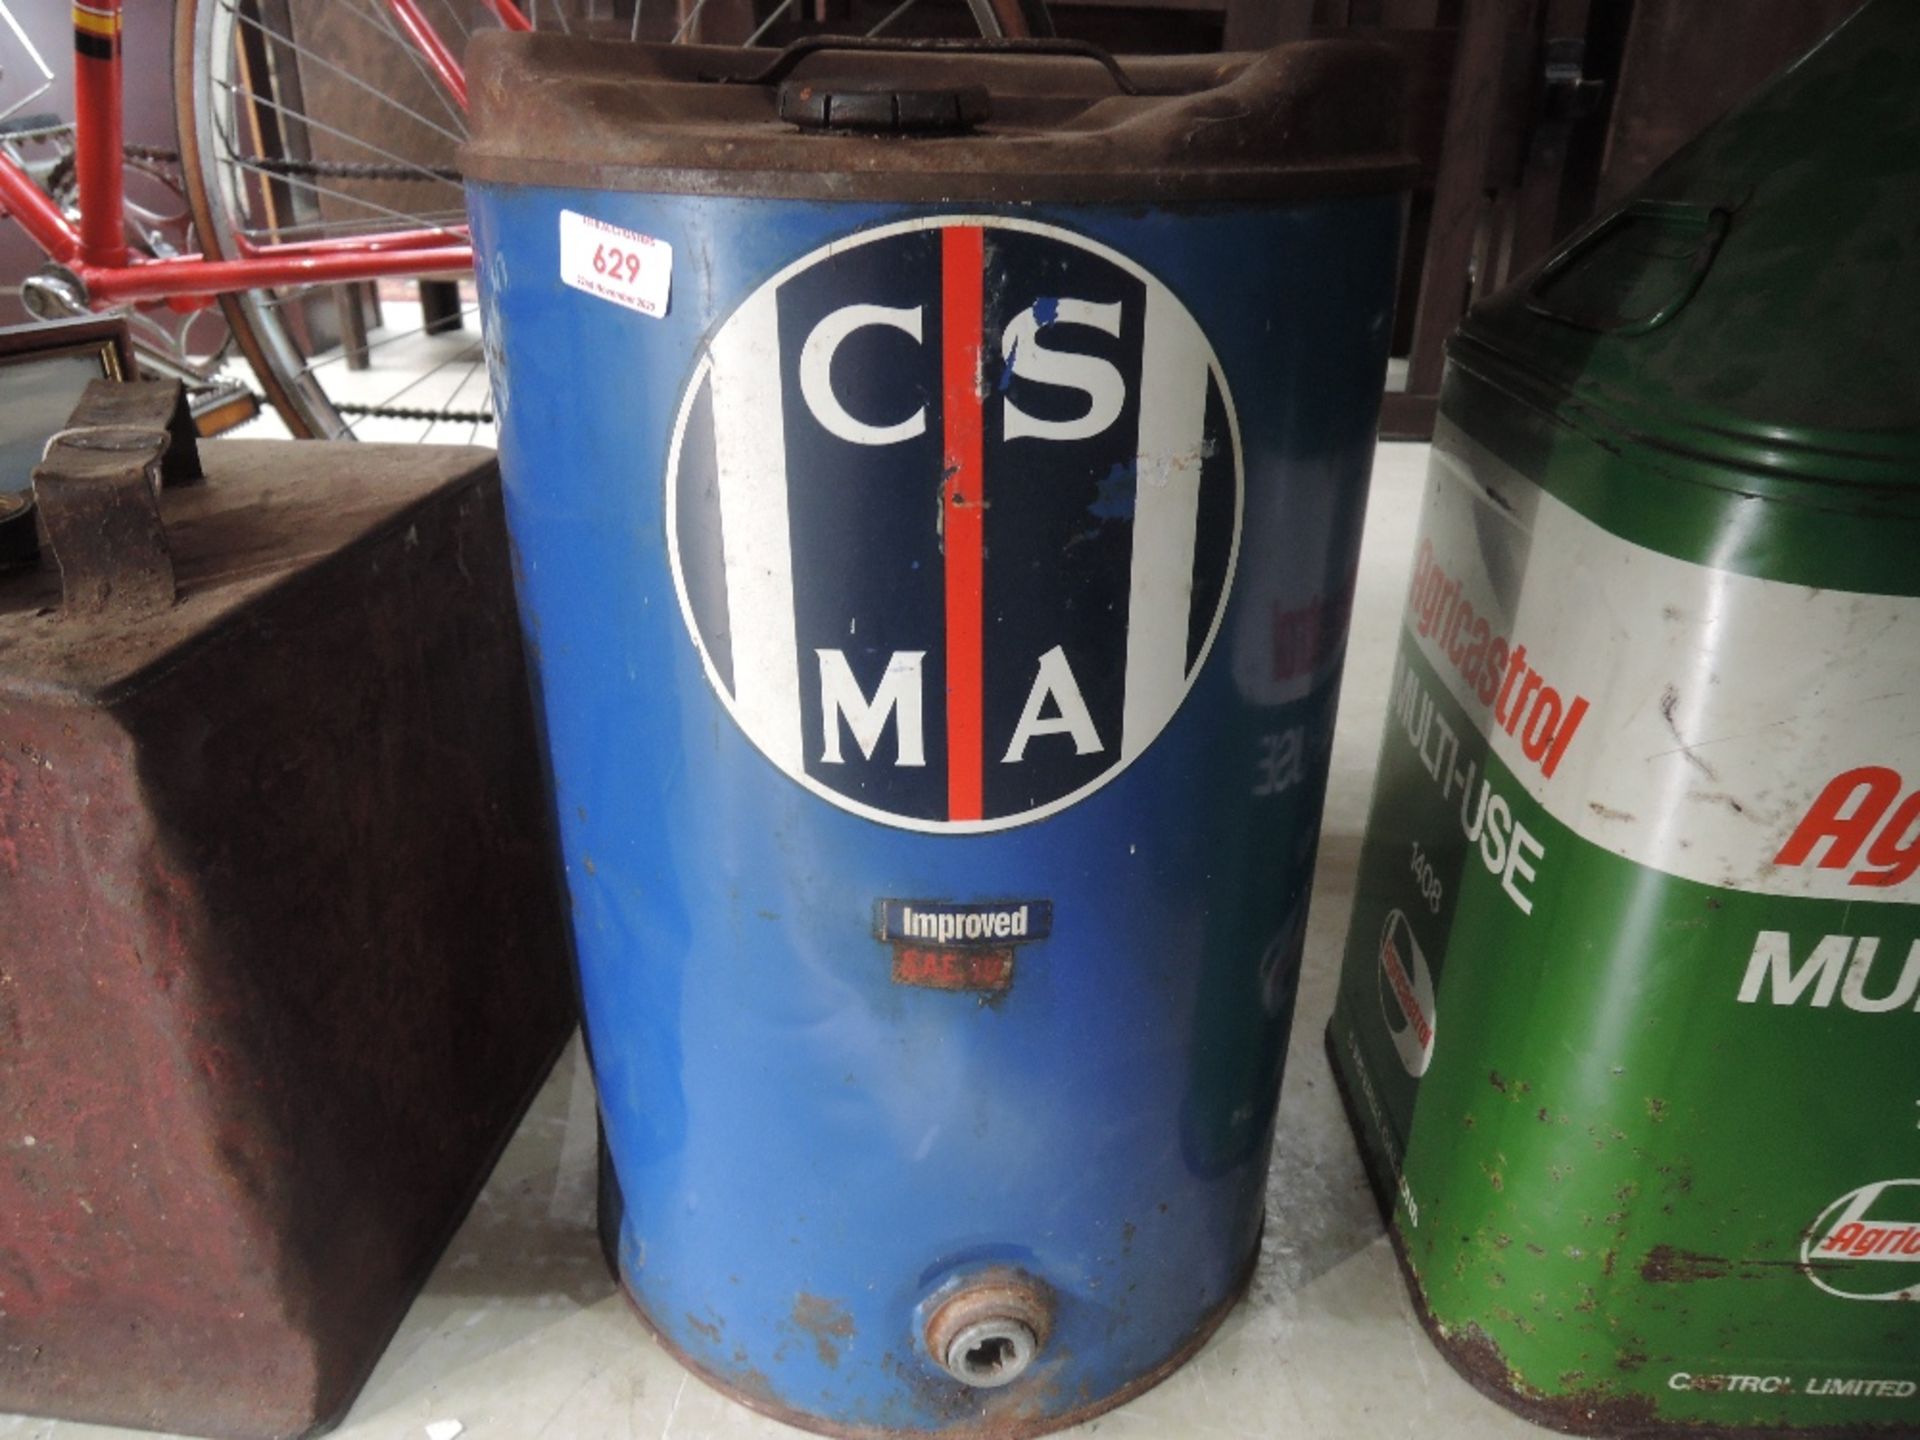 A civil service motoring association oil drum.